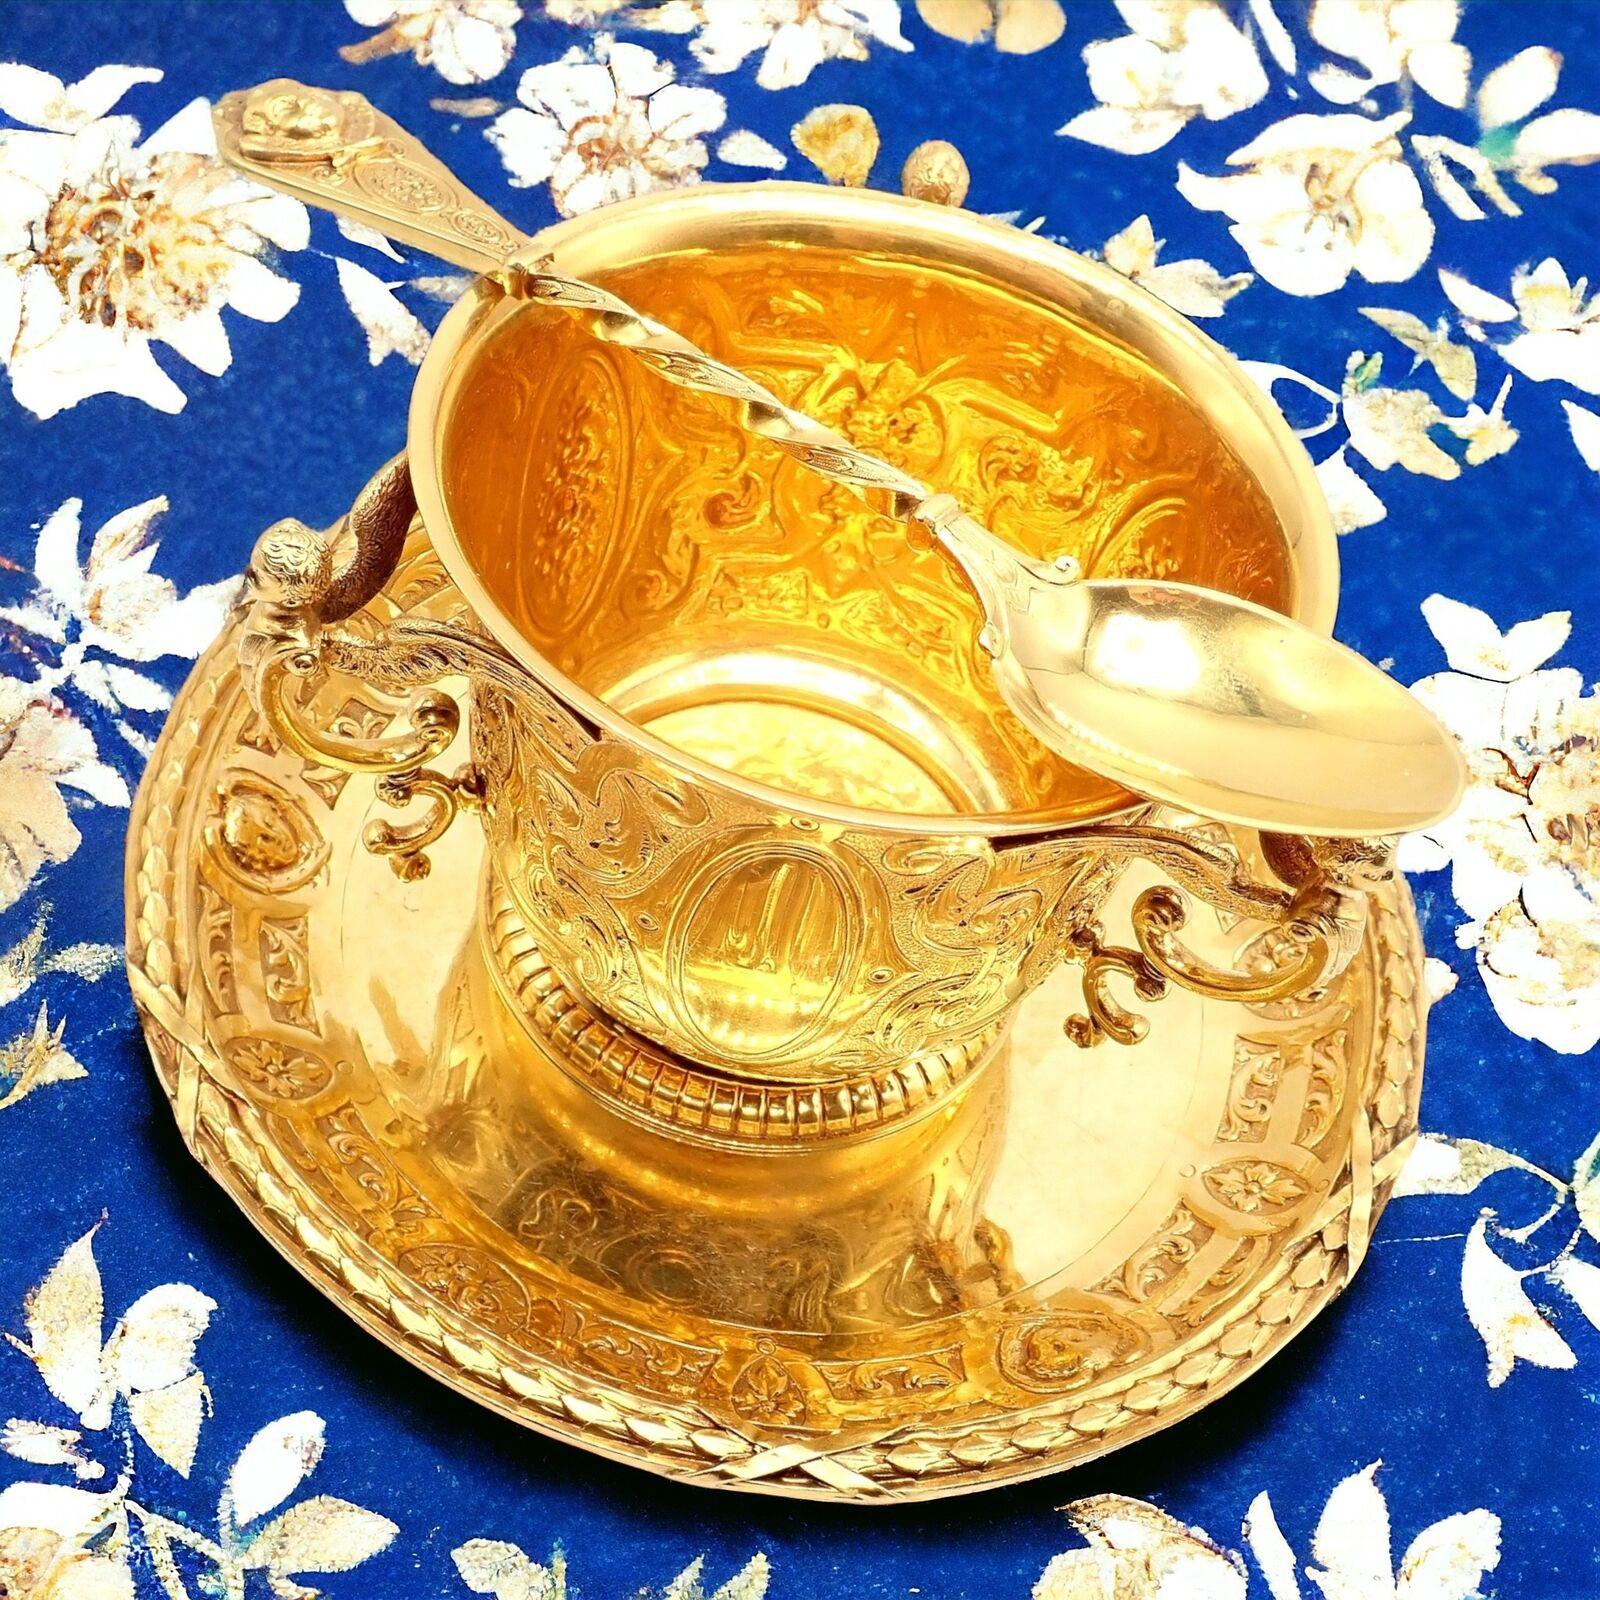 18k Solid Yellow Gold Set von antiken Zuckerdose, Schüssel und Löffel von Abraham Portal circa 1779.
Das aus 18-karätigem Gold gefertigte Set aus Zuckerdose, Schale und Löffel von Abraham Portal aus dem 18. Jahrhundert ist ein bemerkenswertes